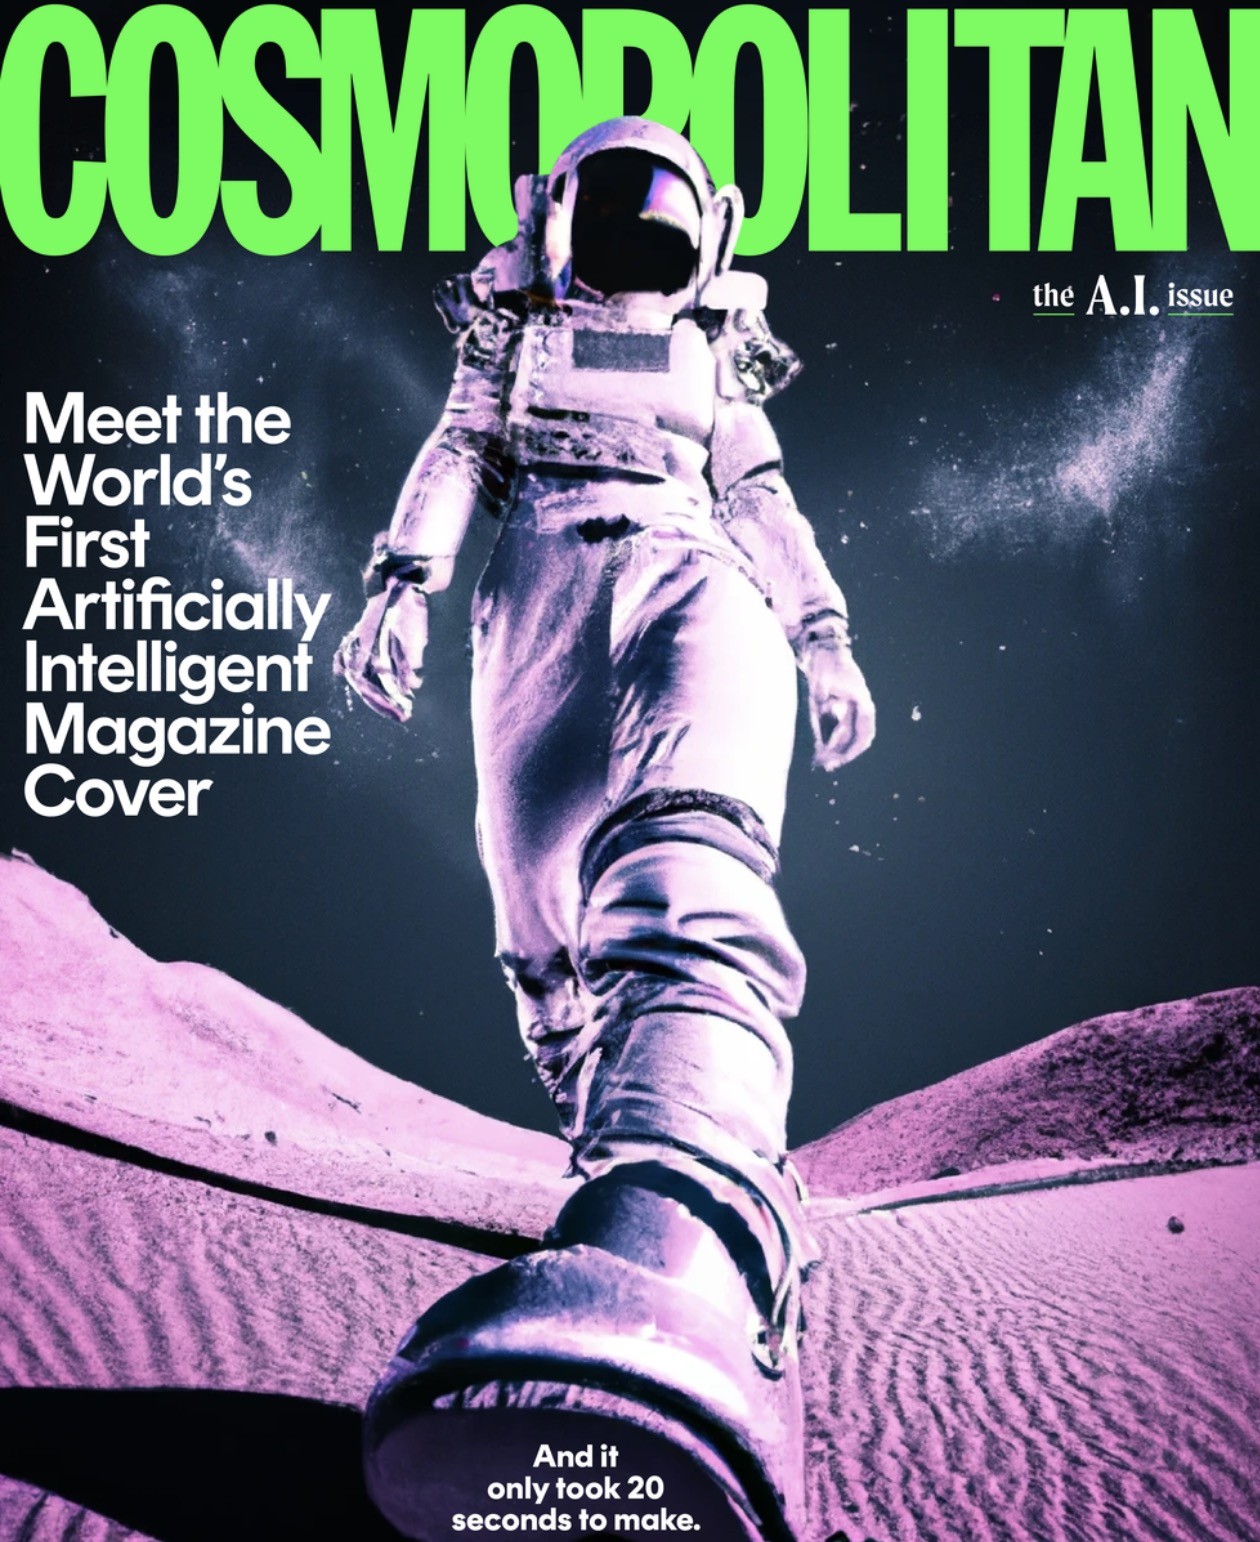 Capa da revista Cosmopolitan com imagem gerada por inteligência artificial